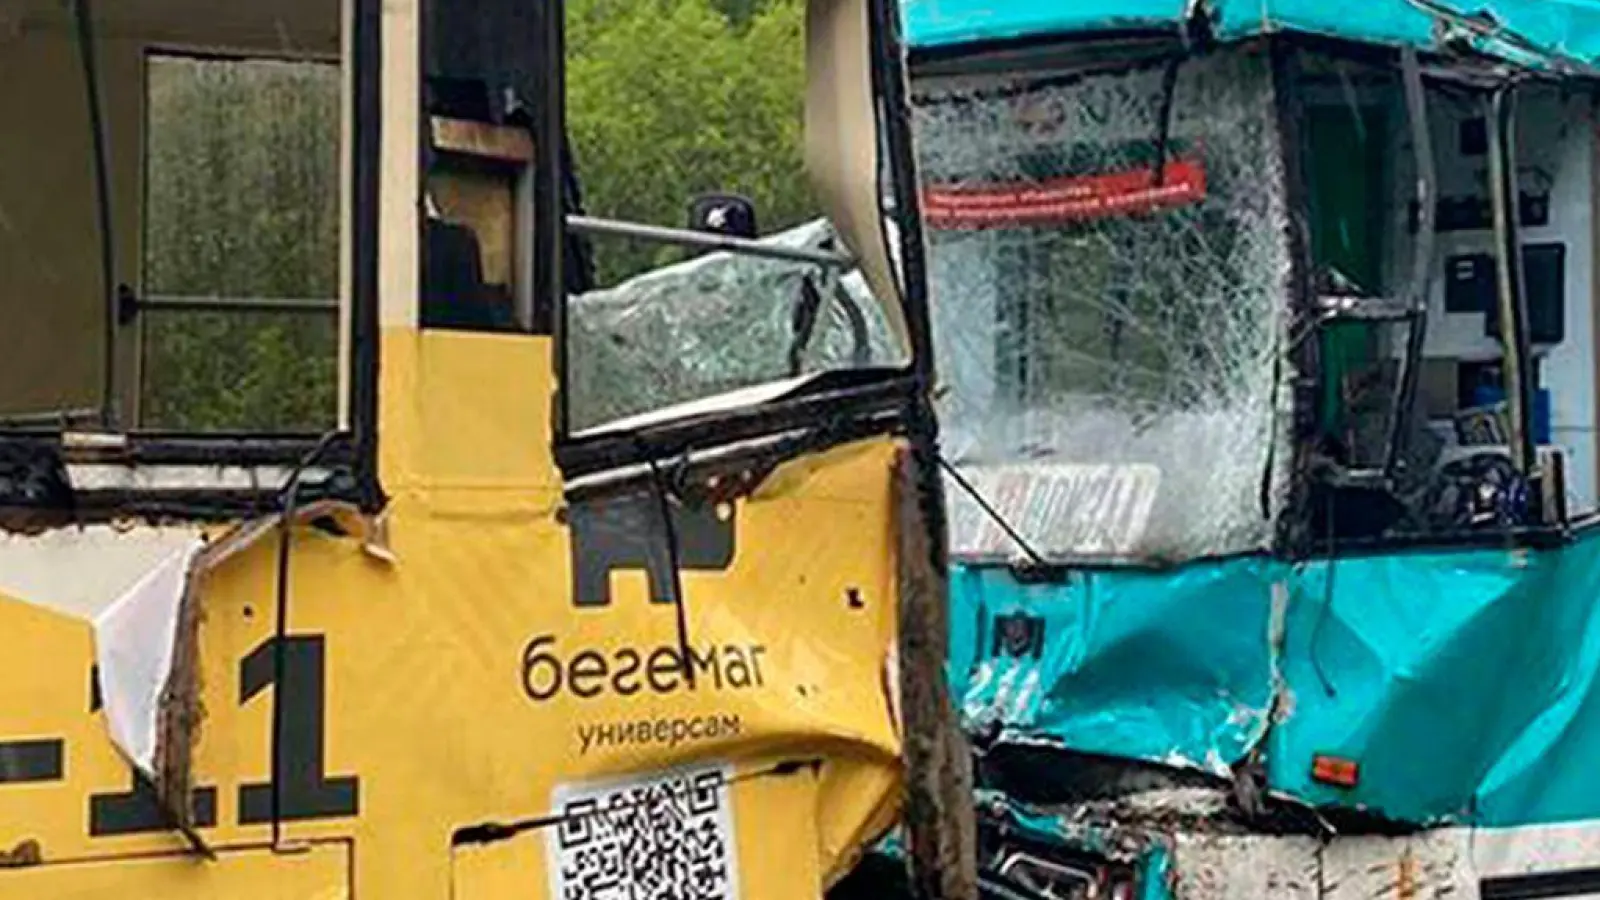 Beim Zusammenstoß zweier Straßenbahnen in der sibirischen Stadt Kemerowo wurden mehr als 100 Menschen verletzt. (Foto: Uncredited/Russian Interior Ministry Kemorovo/AP/dpa)